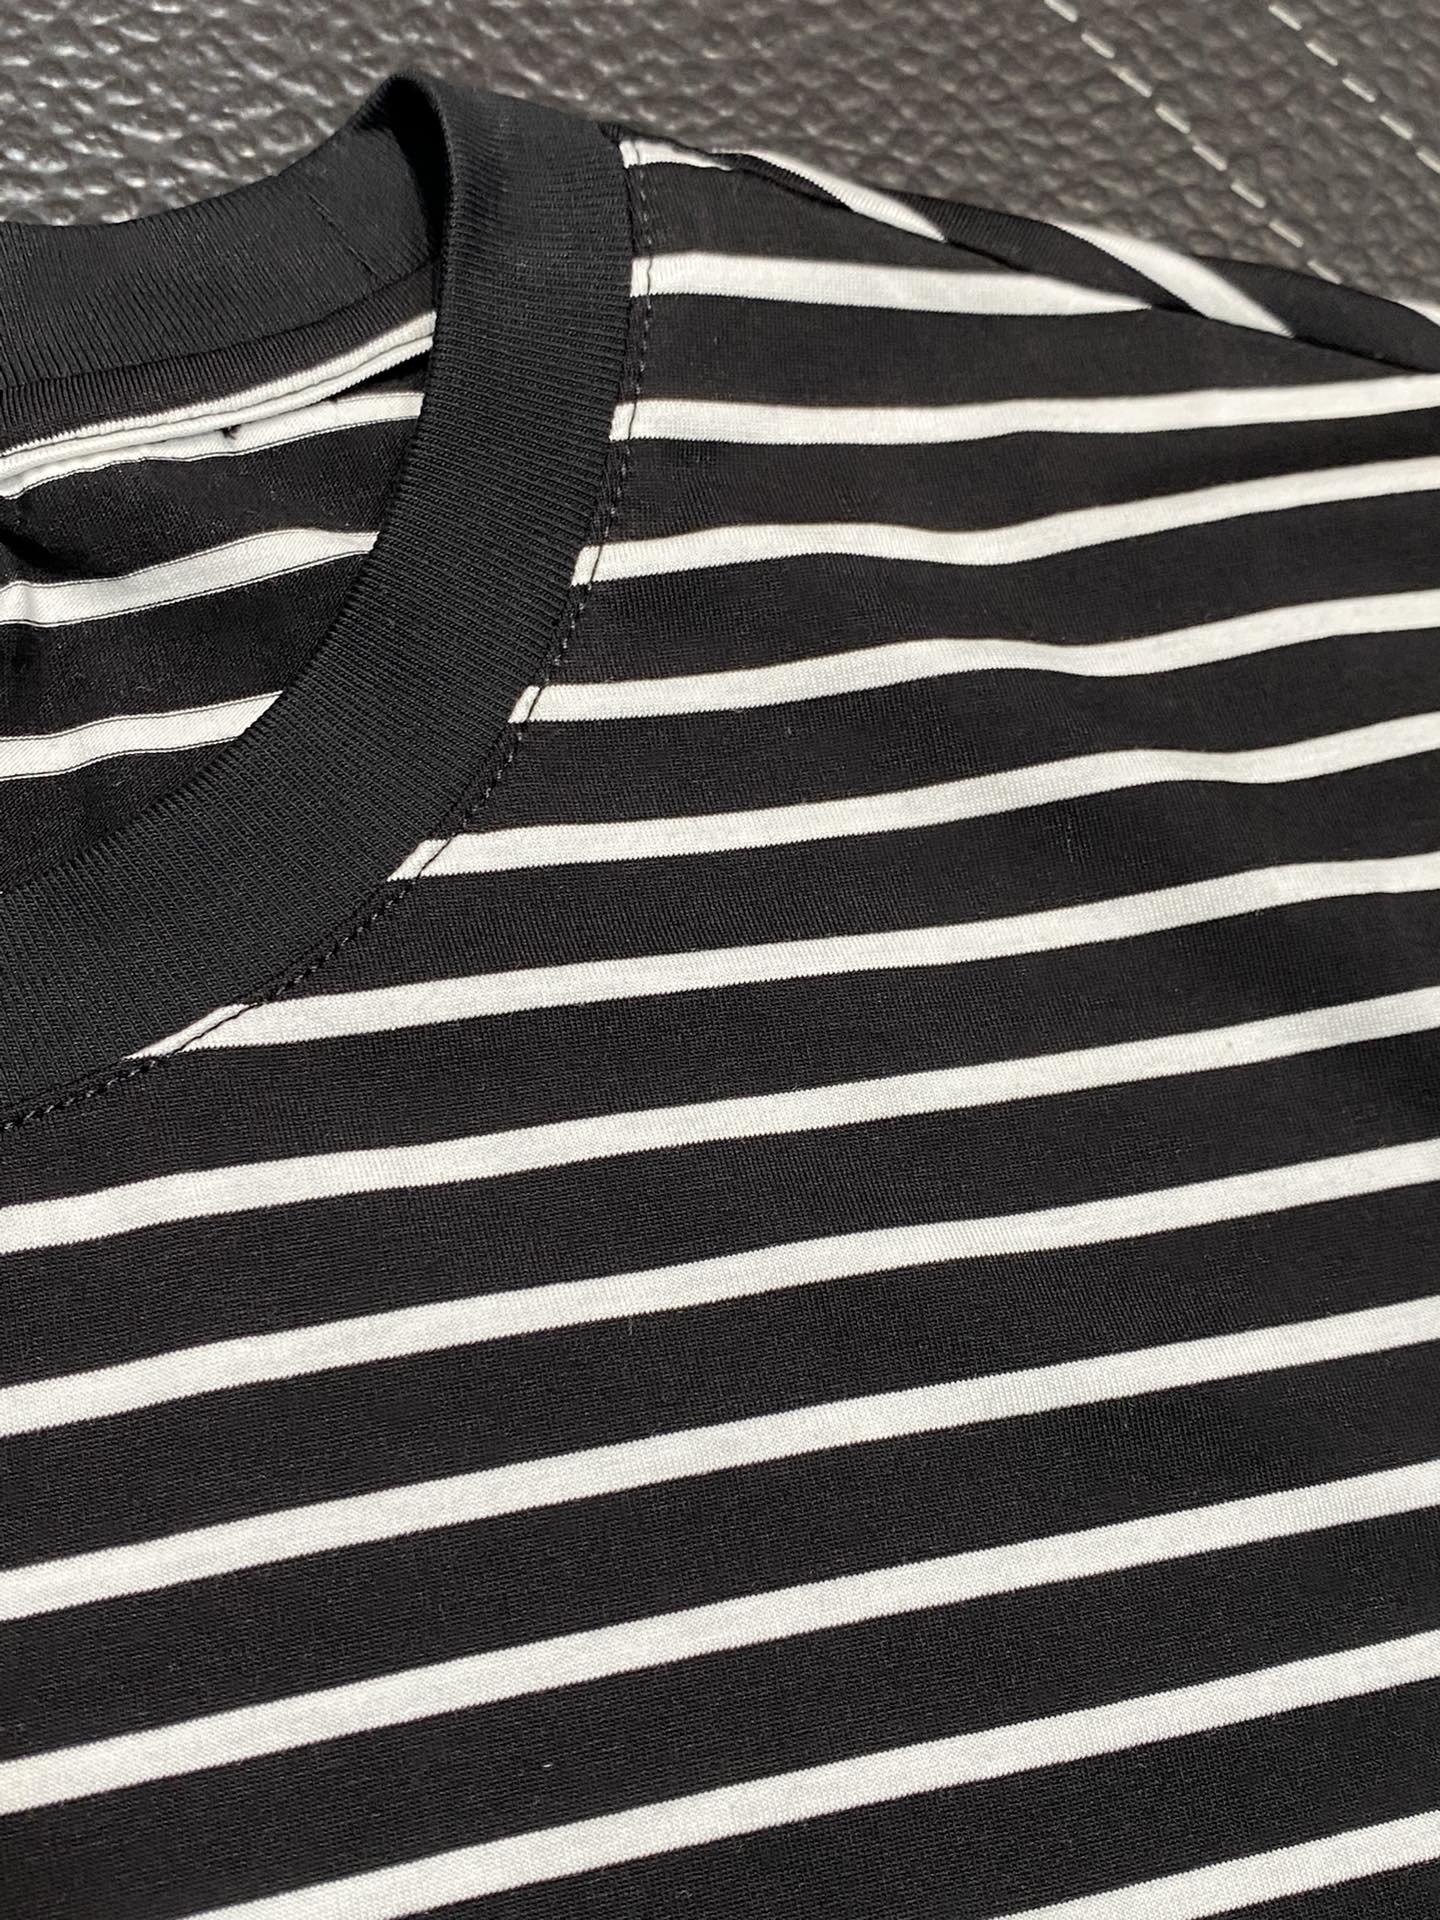 セリーヌ tシャツ 韓国偽物 半袖 トップス シンプル 純綿 快適 柔らかい ファッション 人気品 縞模様 ブラック_4